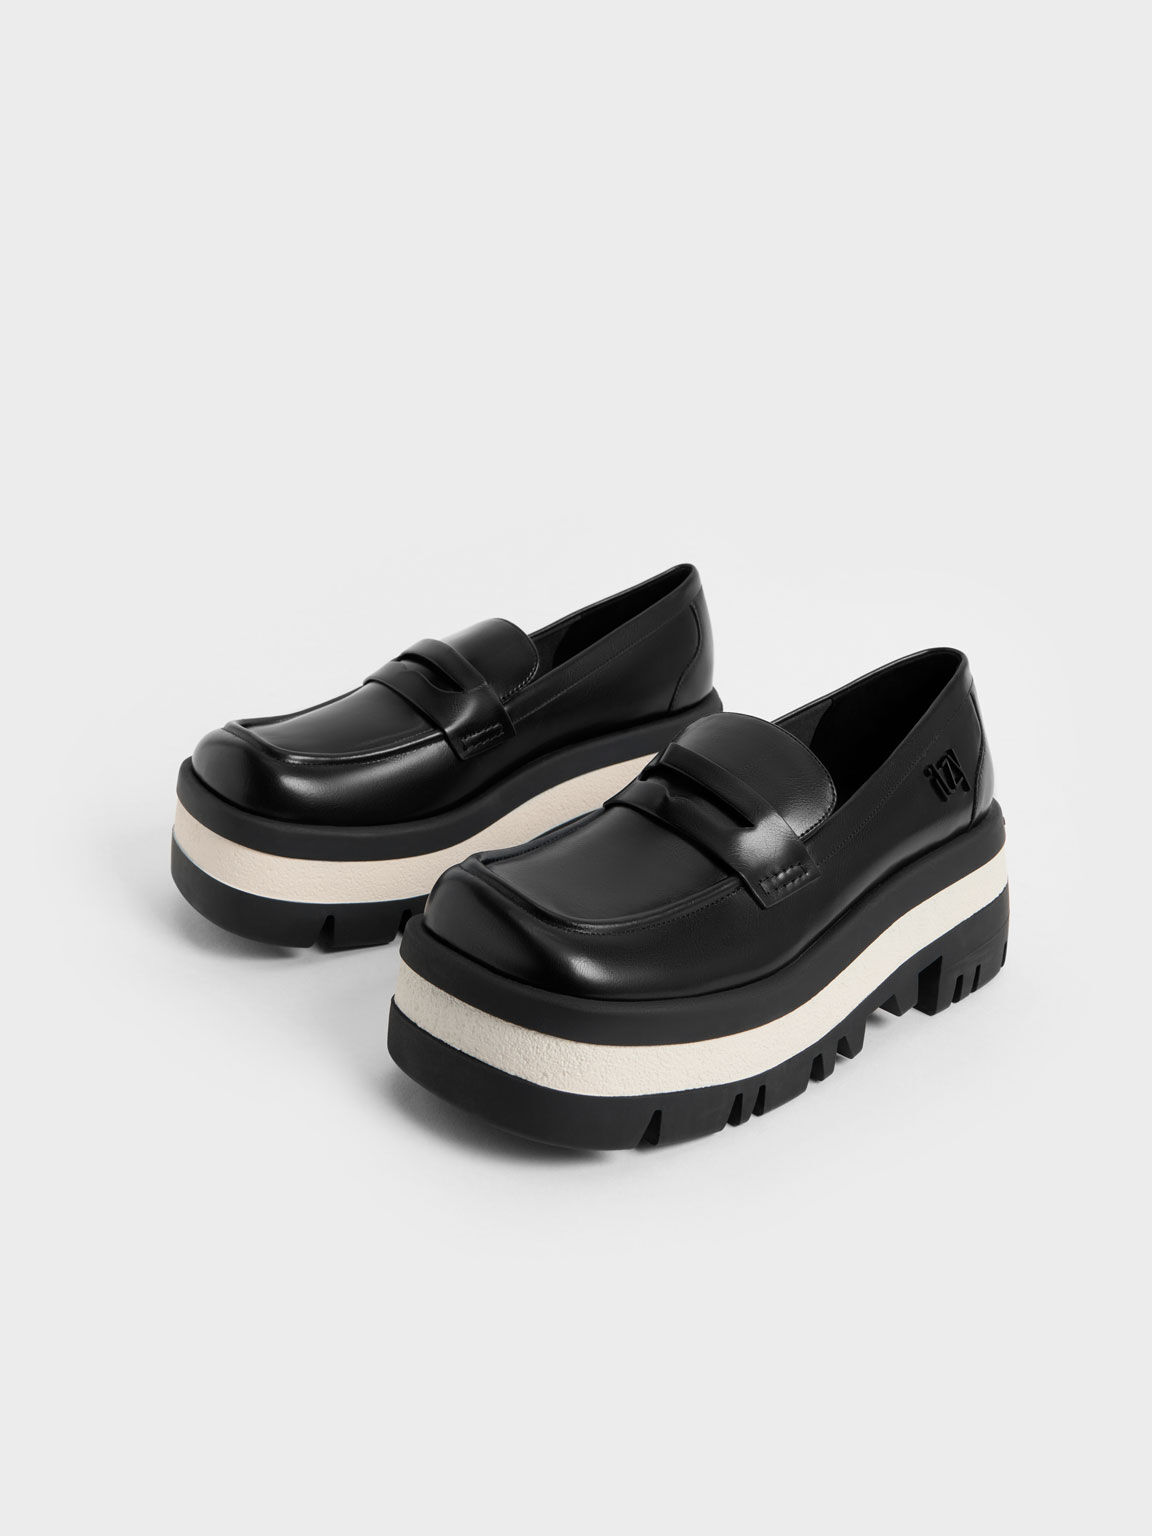 حذاء رانيير من إتزي - نعل تشانكي بلاتفورم وتصميم بيني لوفر, أسود, hi-res